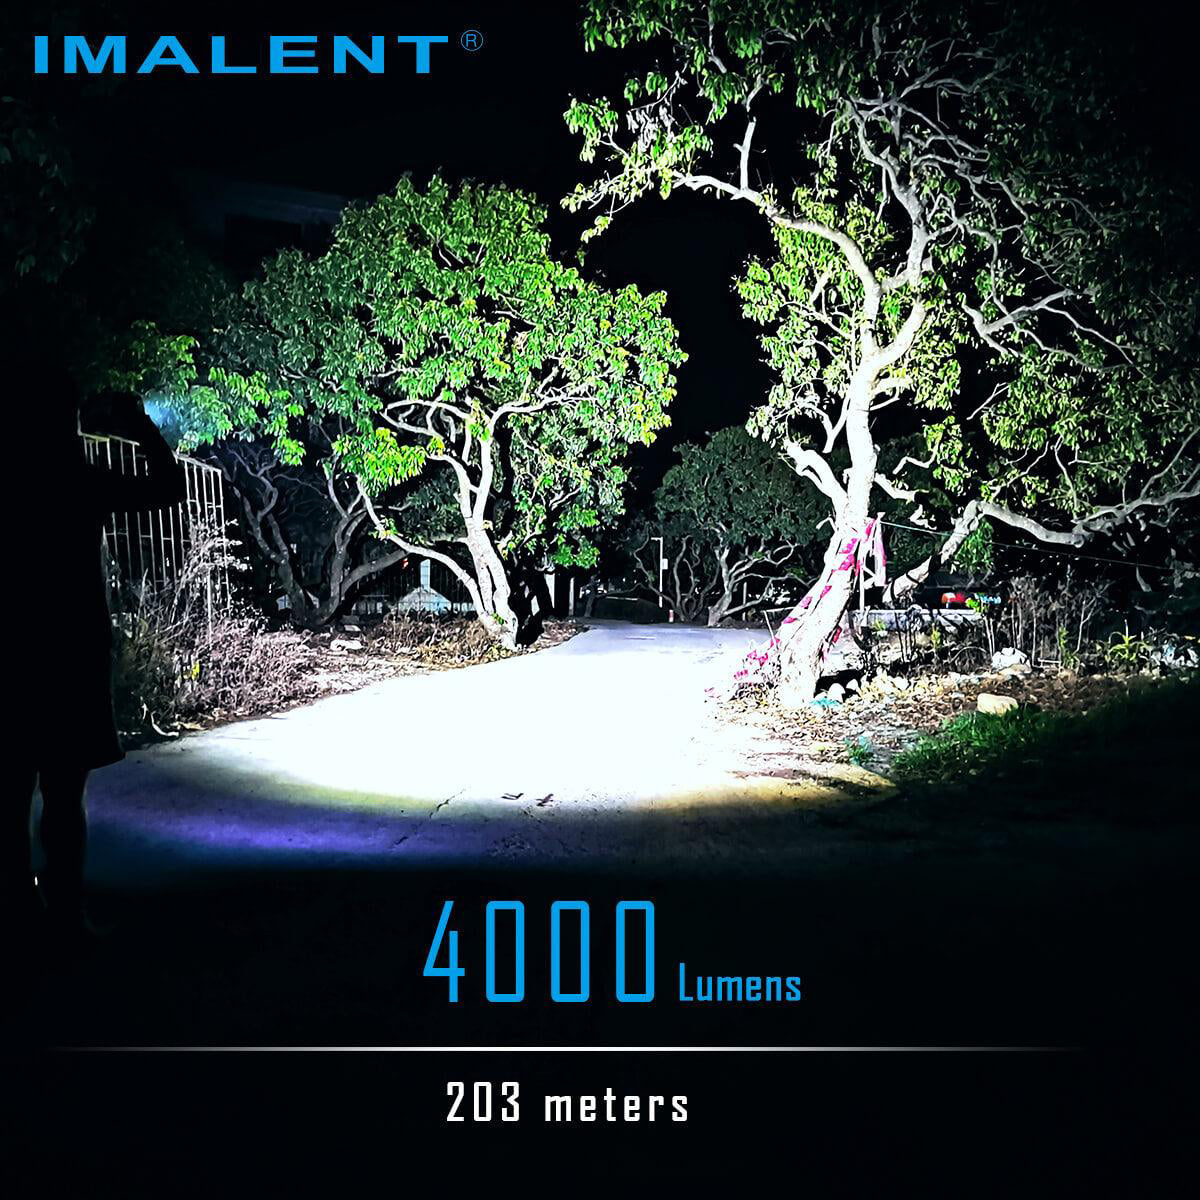 Imalent LD70 4000 lumen EDC flashlight